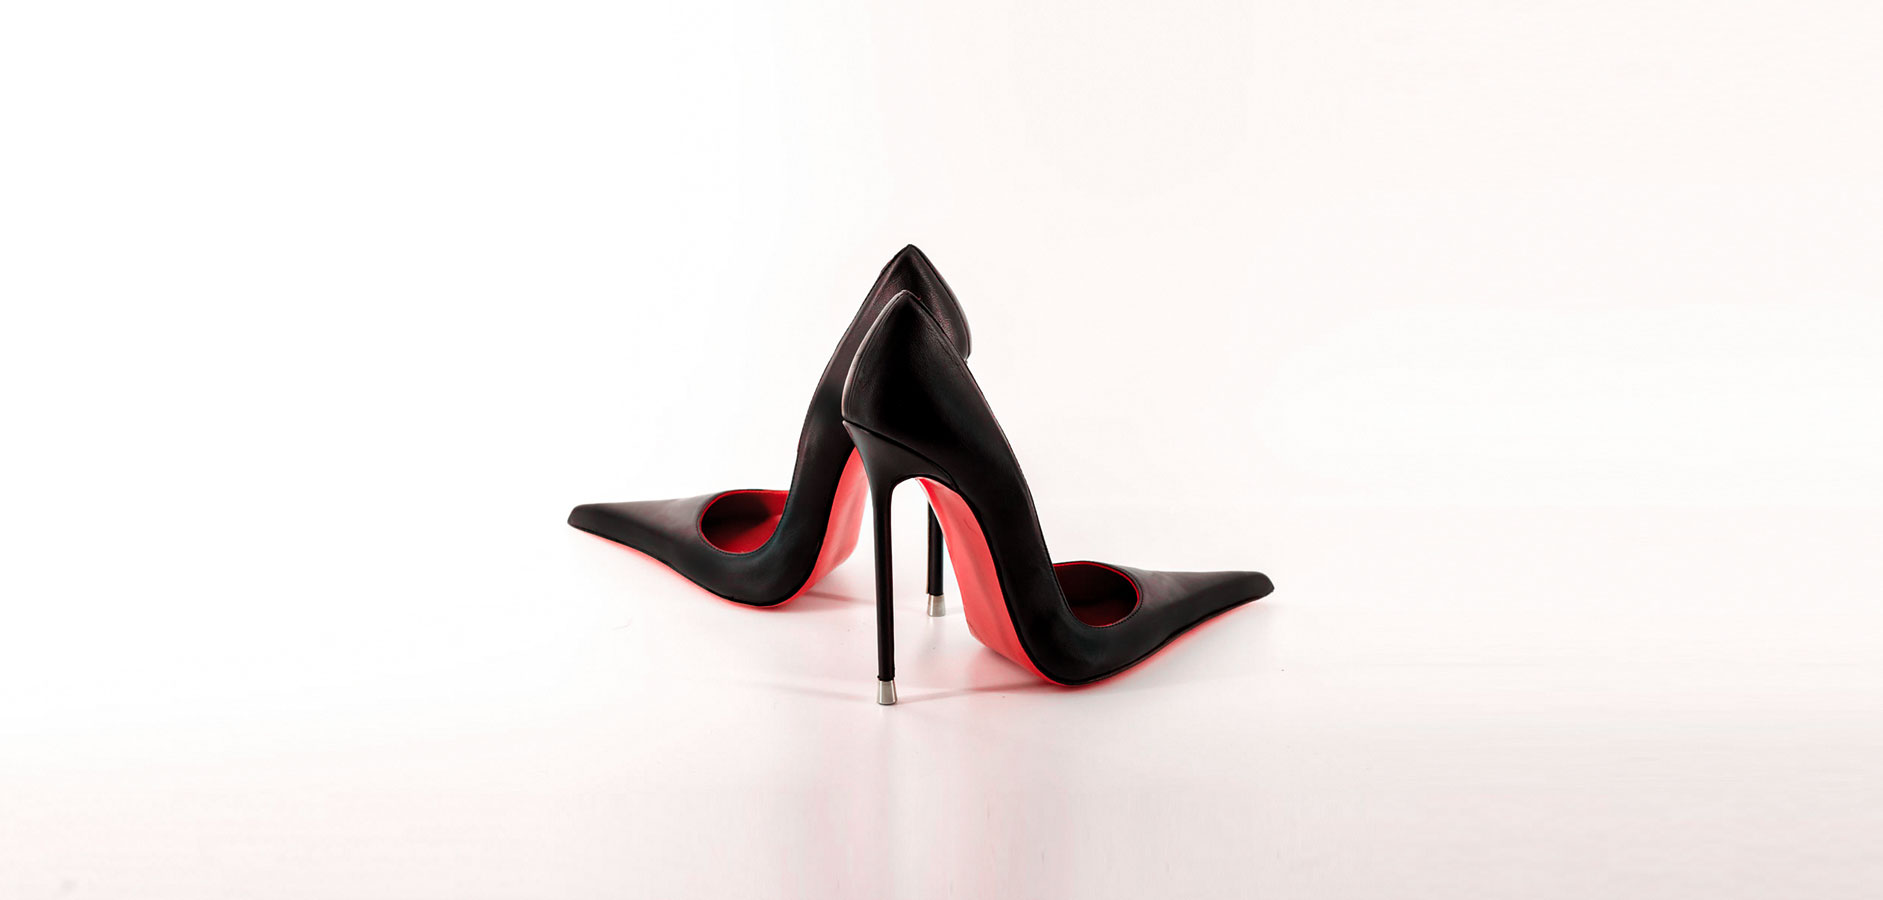 hermes #boots #authentic #luxury #luxshophermes #luxshopshoes